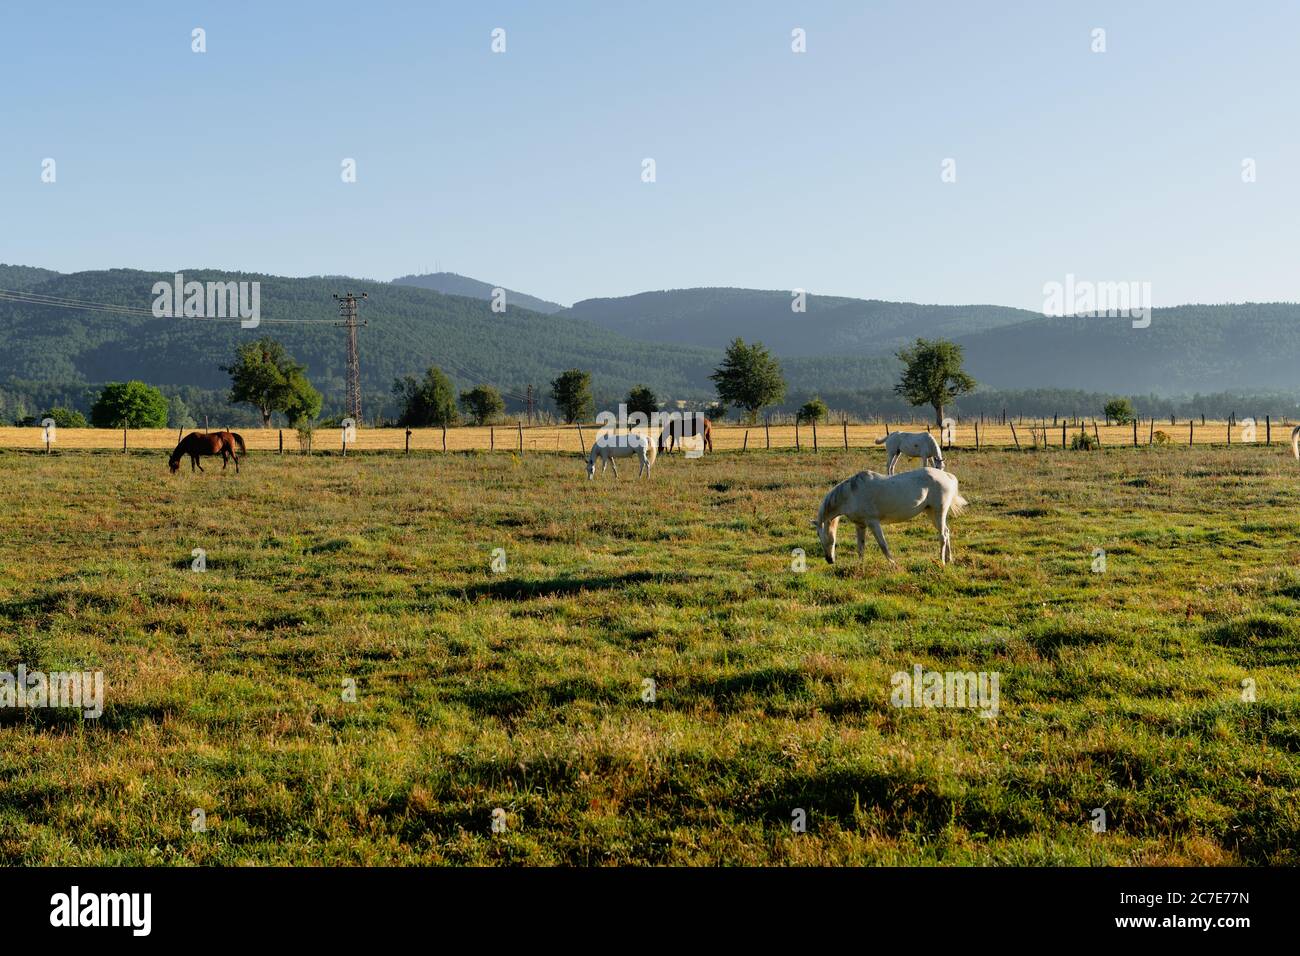 Horses grazing in a field in Daday, Kastamonu, Turkey Stock Photo